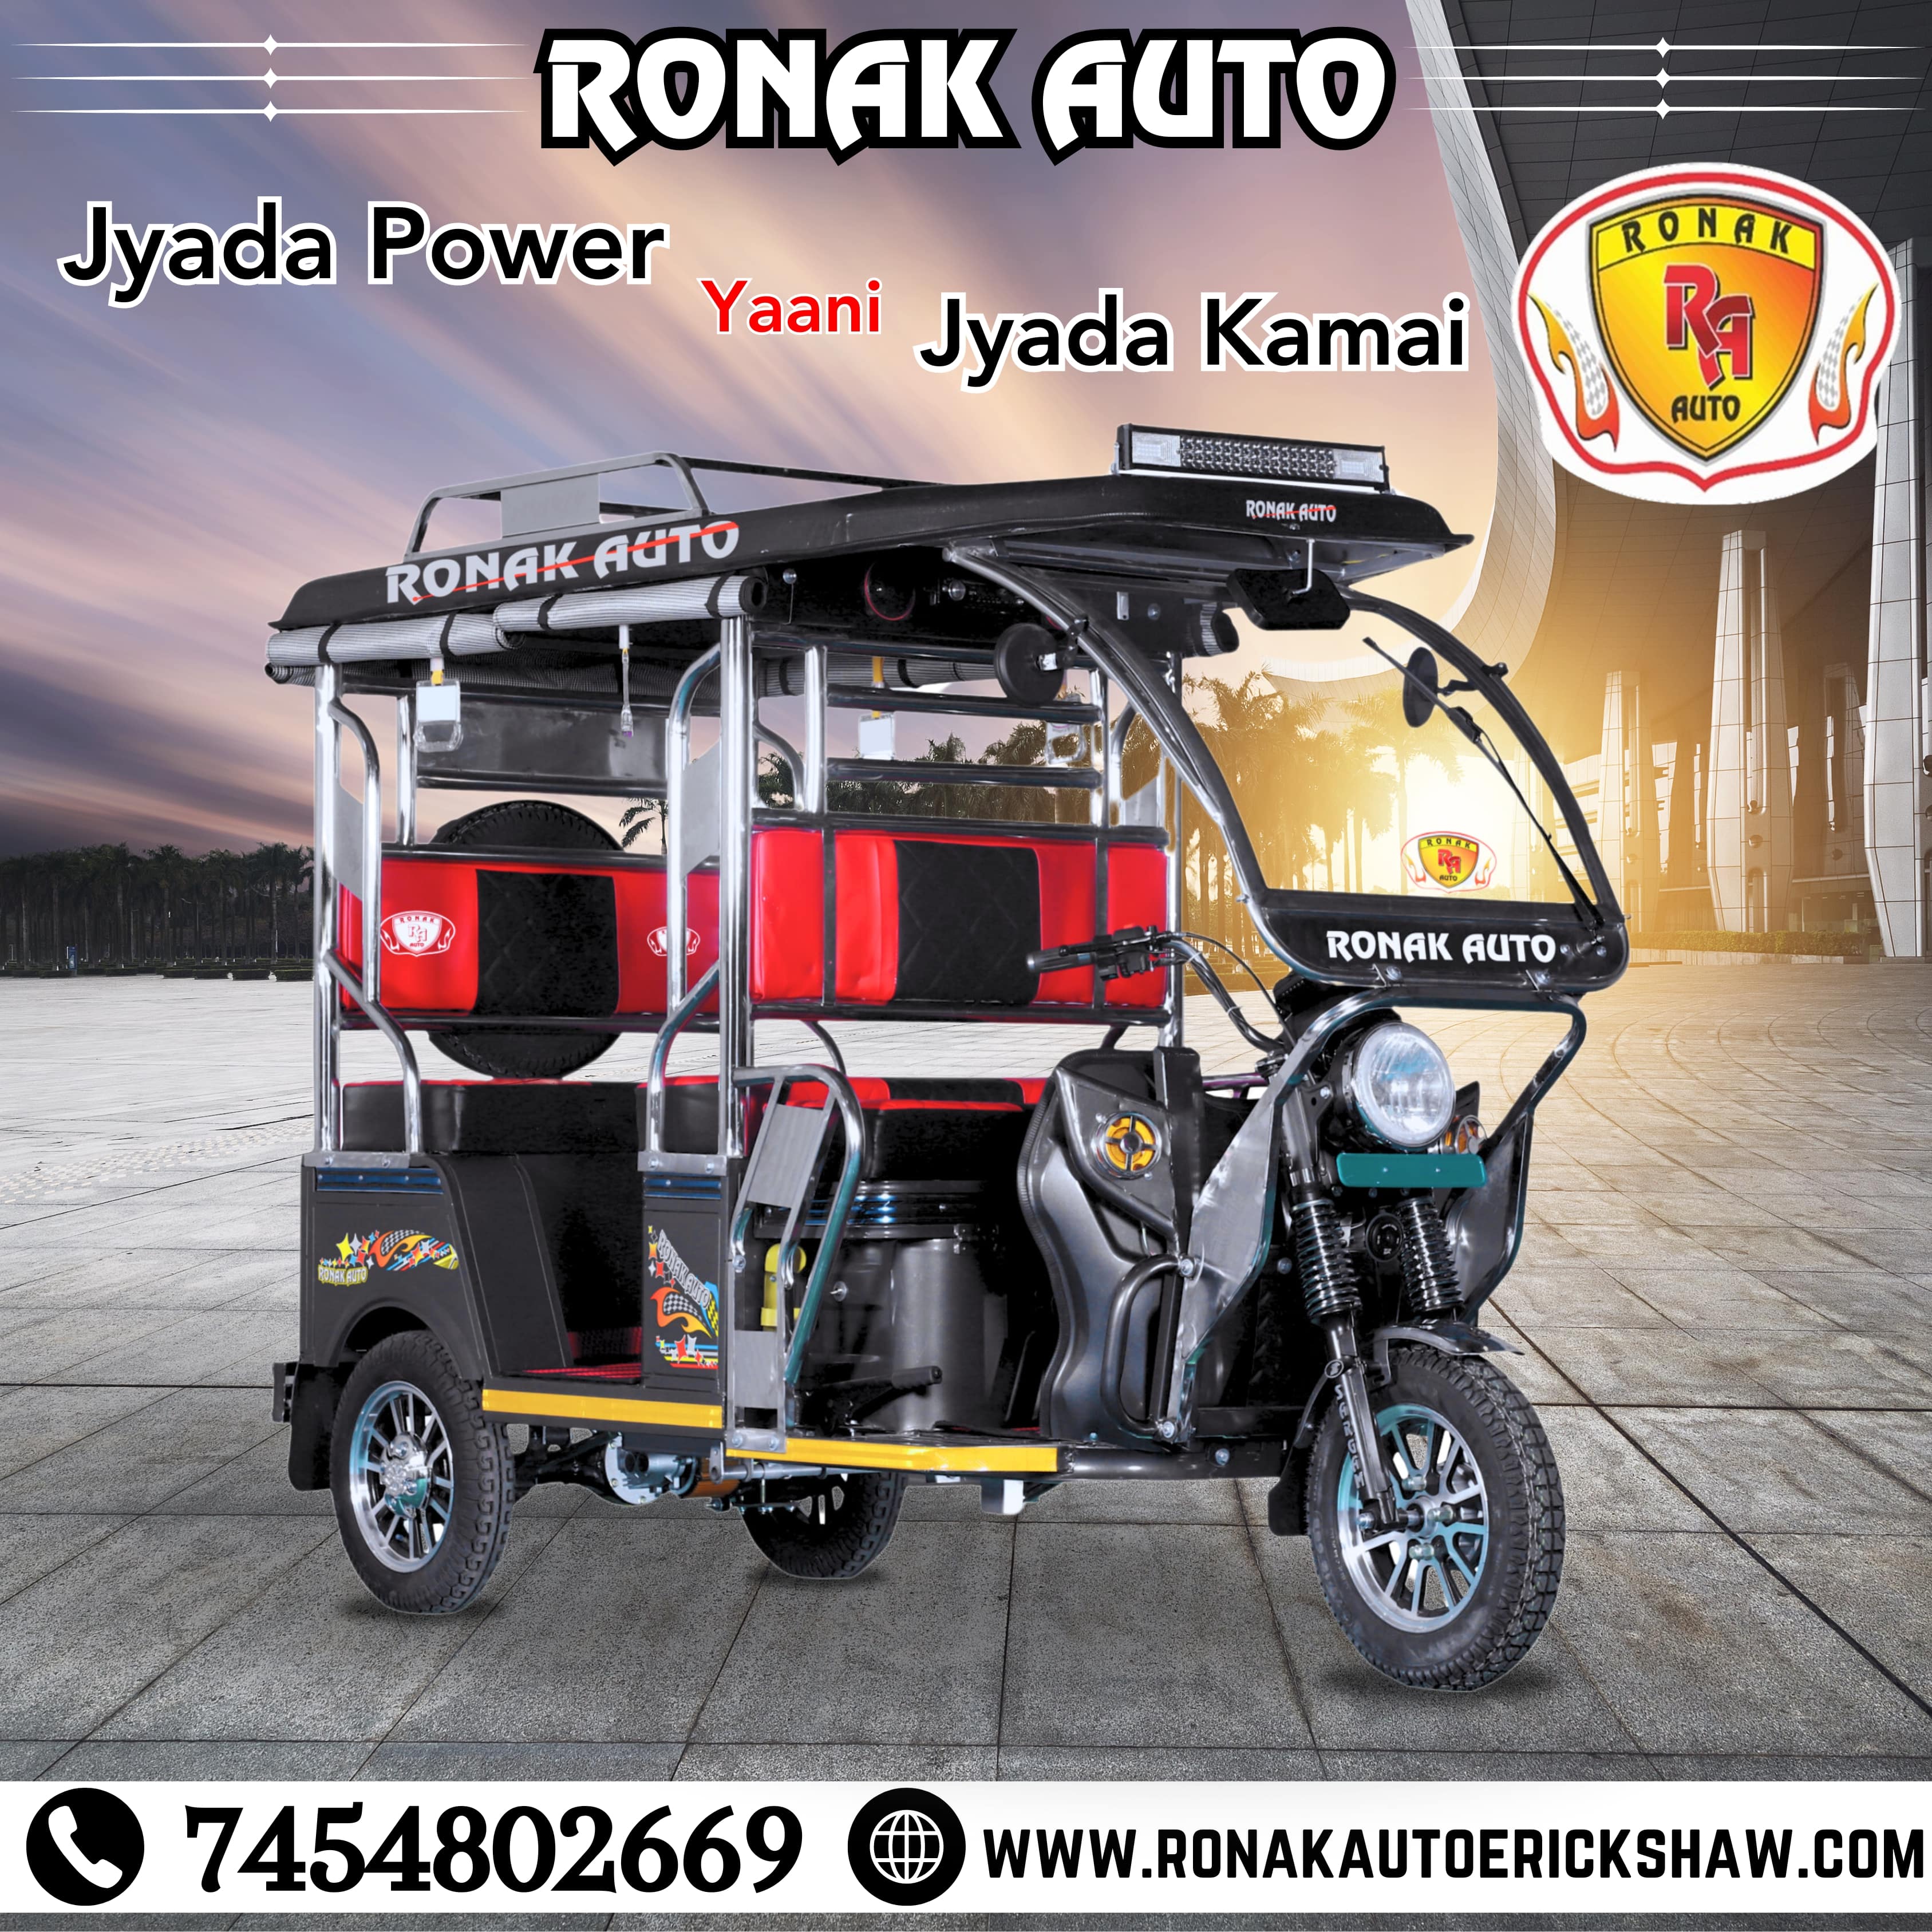  Top Best e rickshaw manufacturers in chandigarh